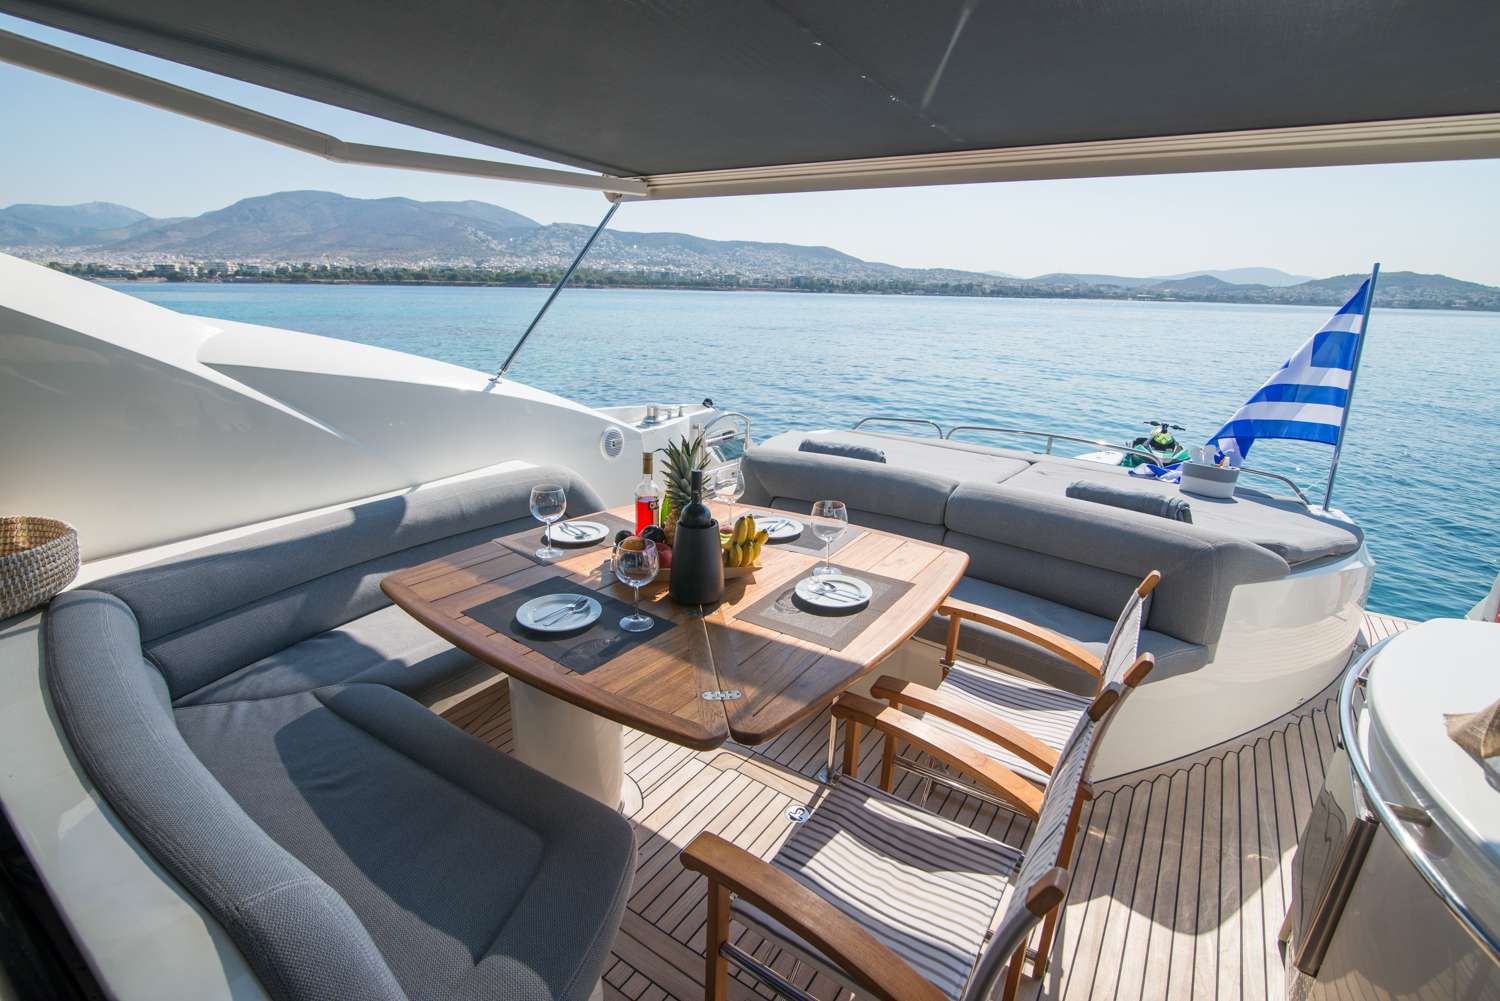 Elentari - Yacht Charter Sami & Boat hire in Greece 4